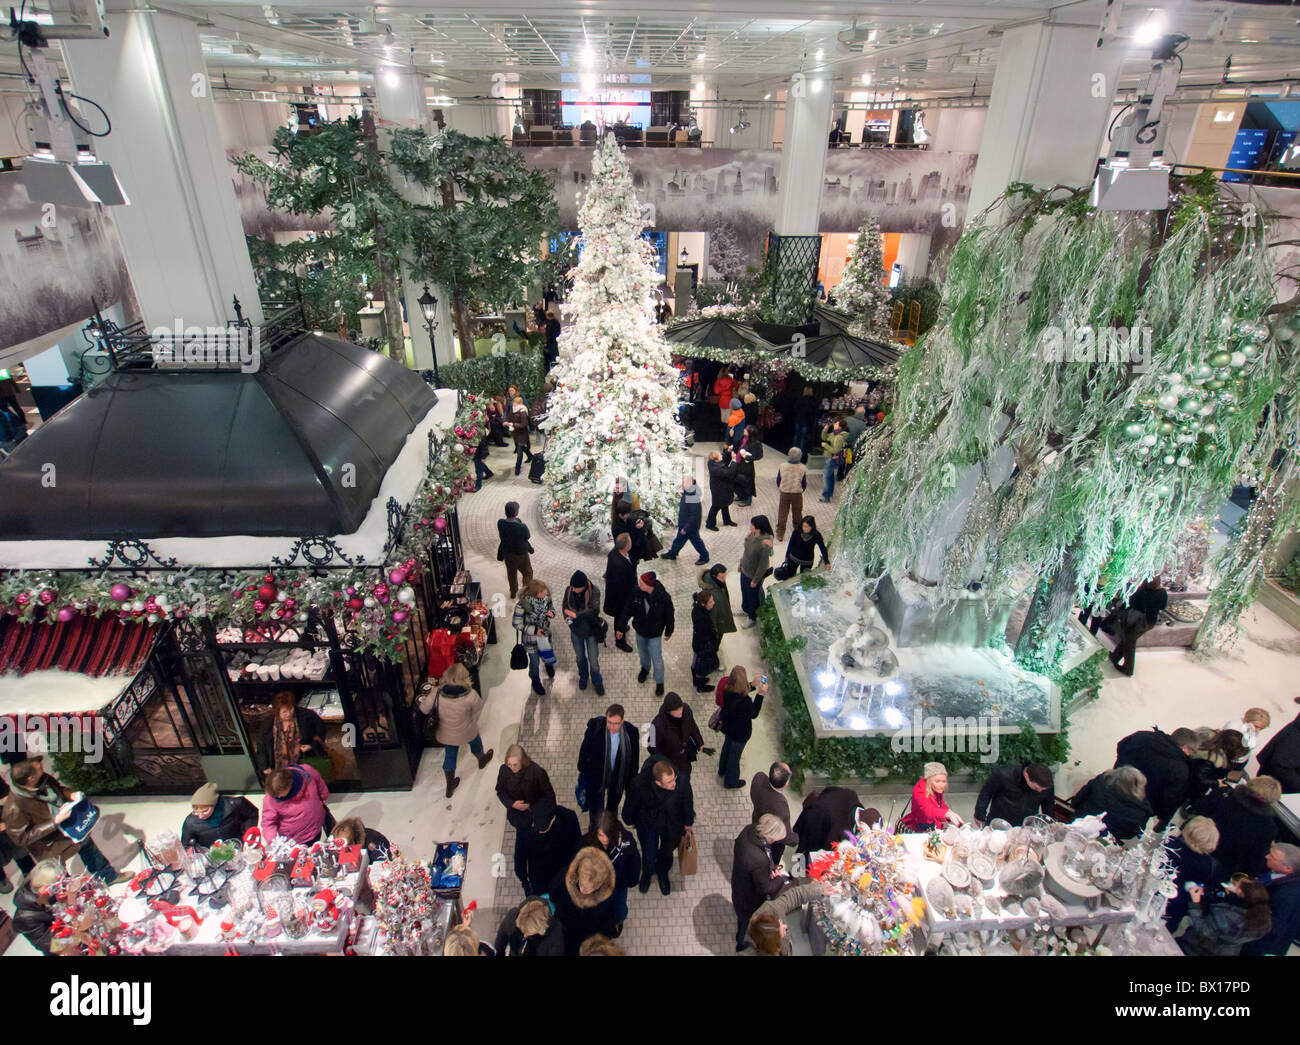 Innere des berühmten KaDeWe (Kaufhaus des Westens) Kaufhaus zu Weihnachten  in Berlin Deutschland Stockfotografie - Alamy